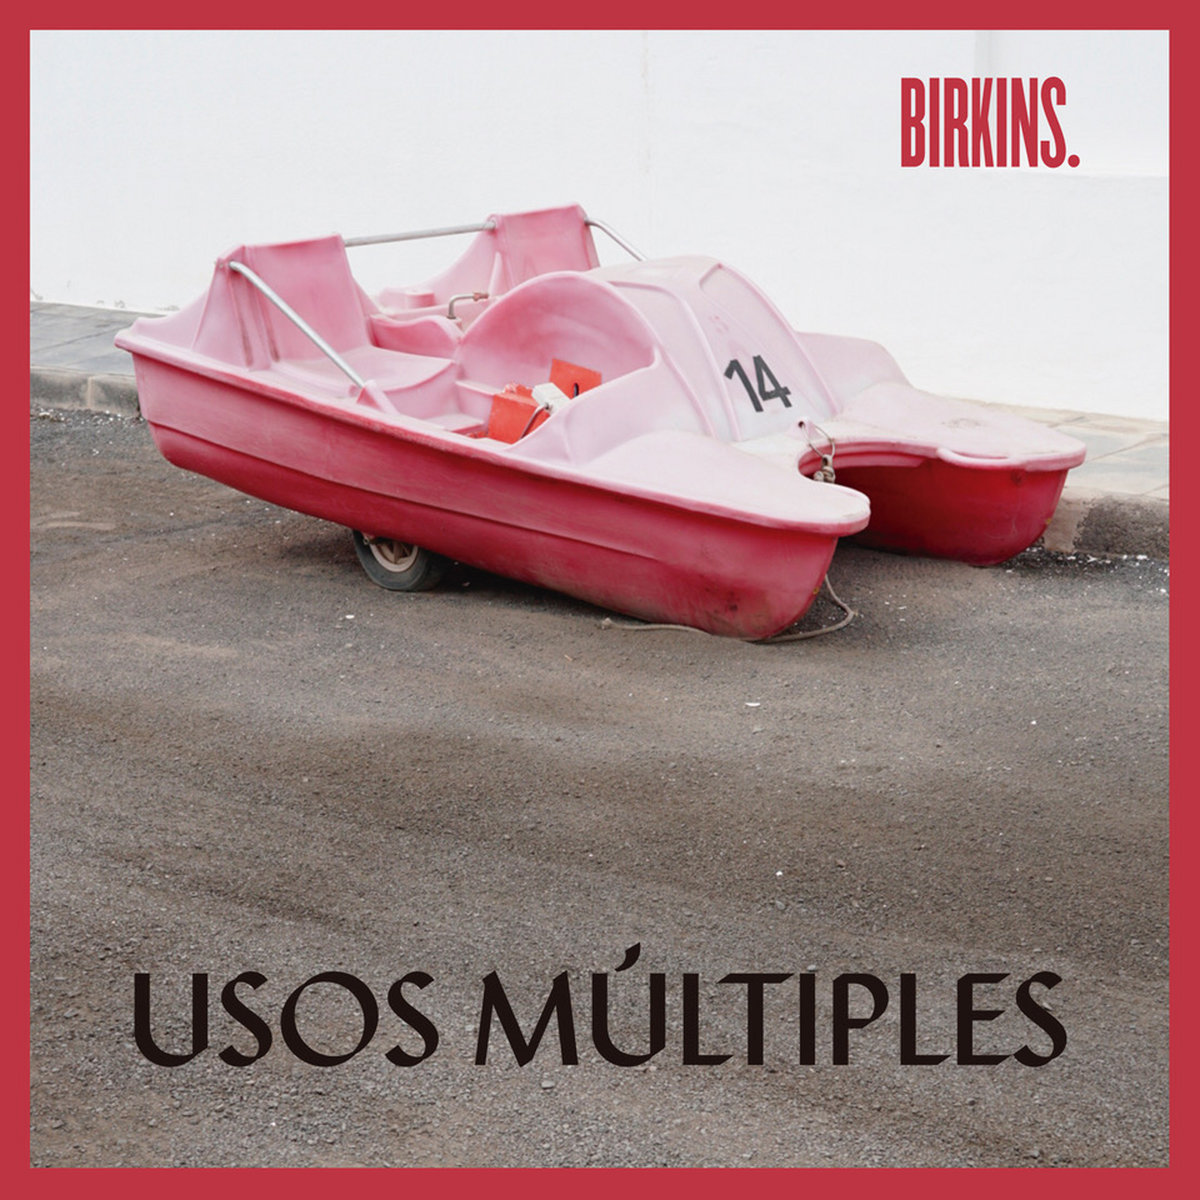 Birkins “Usos múltiples” CD 1